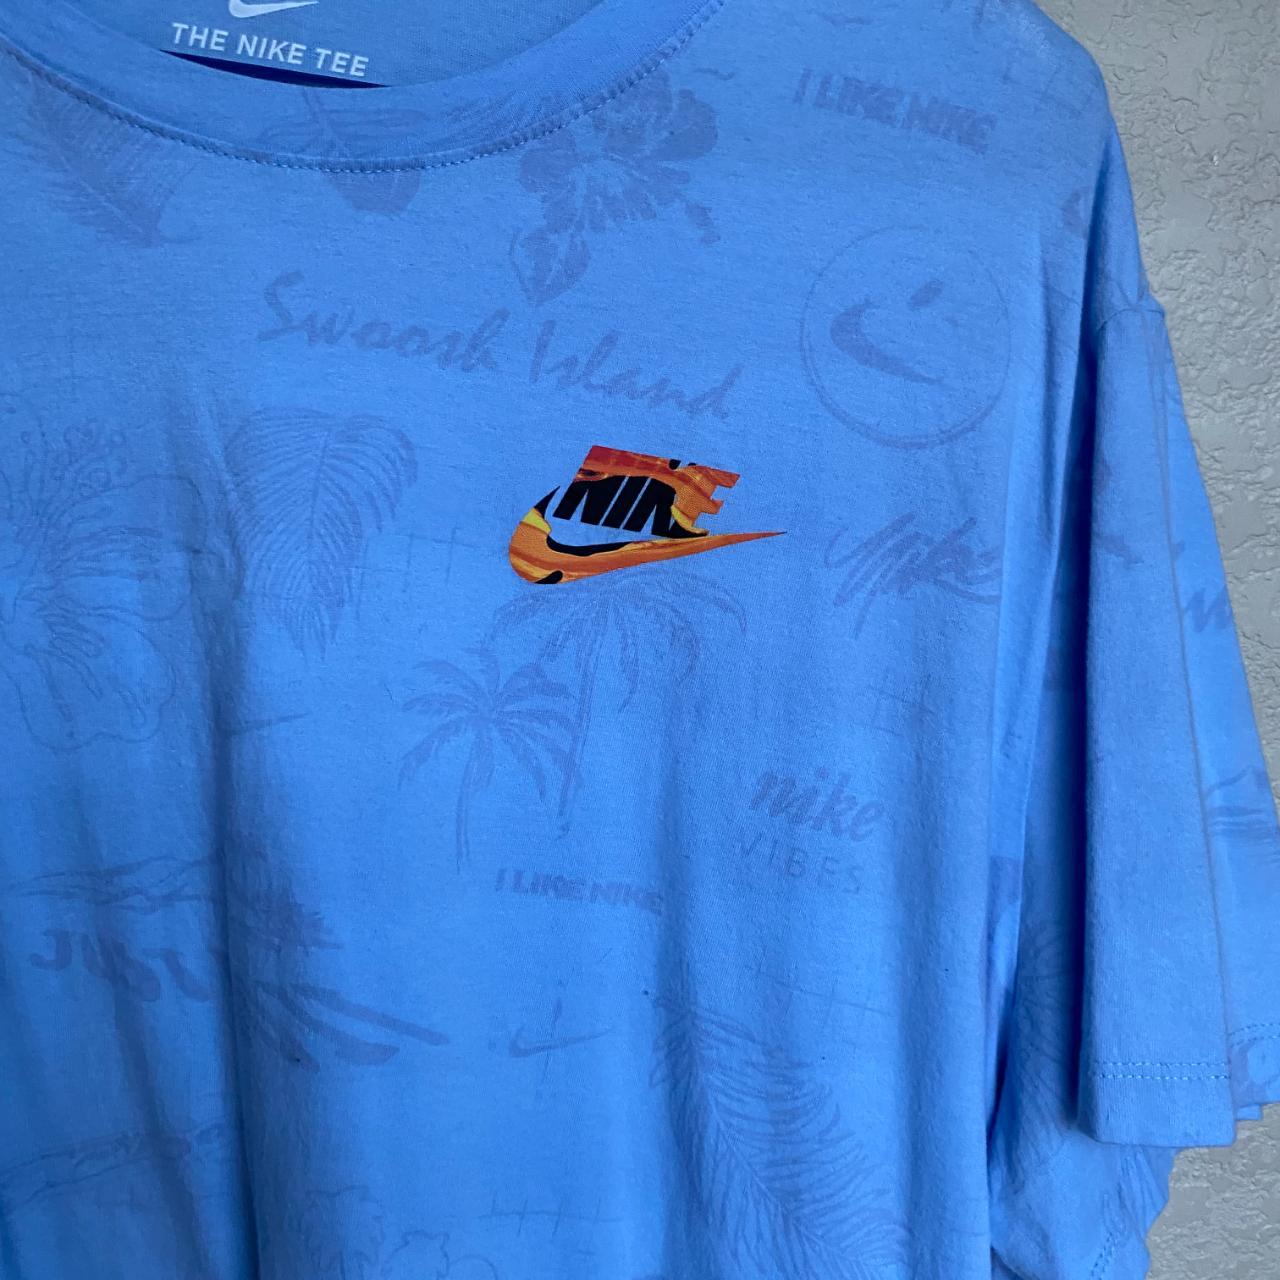 Men's XXL Light Blue Nike T-Shirt - Depop